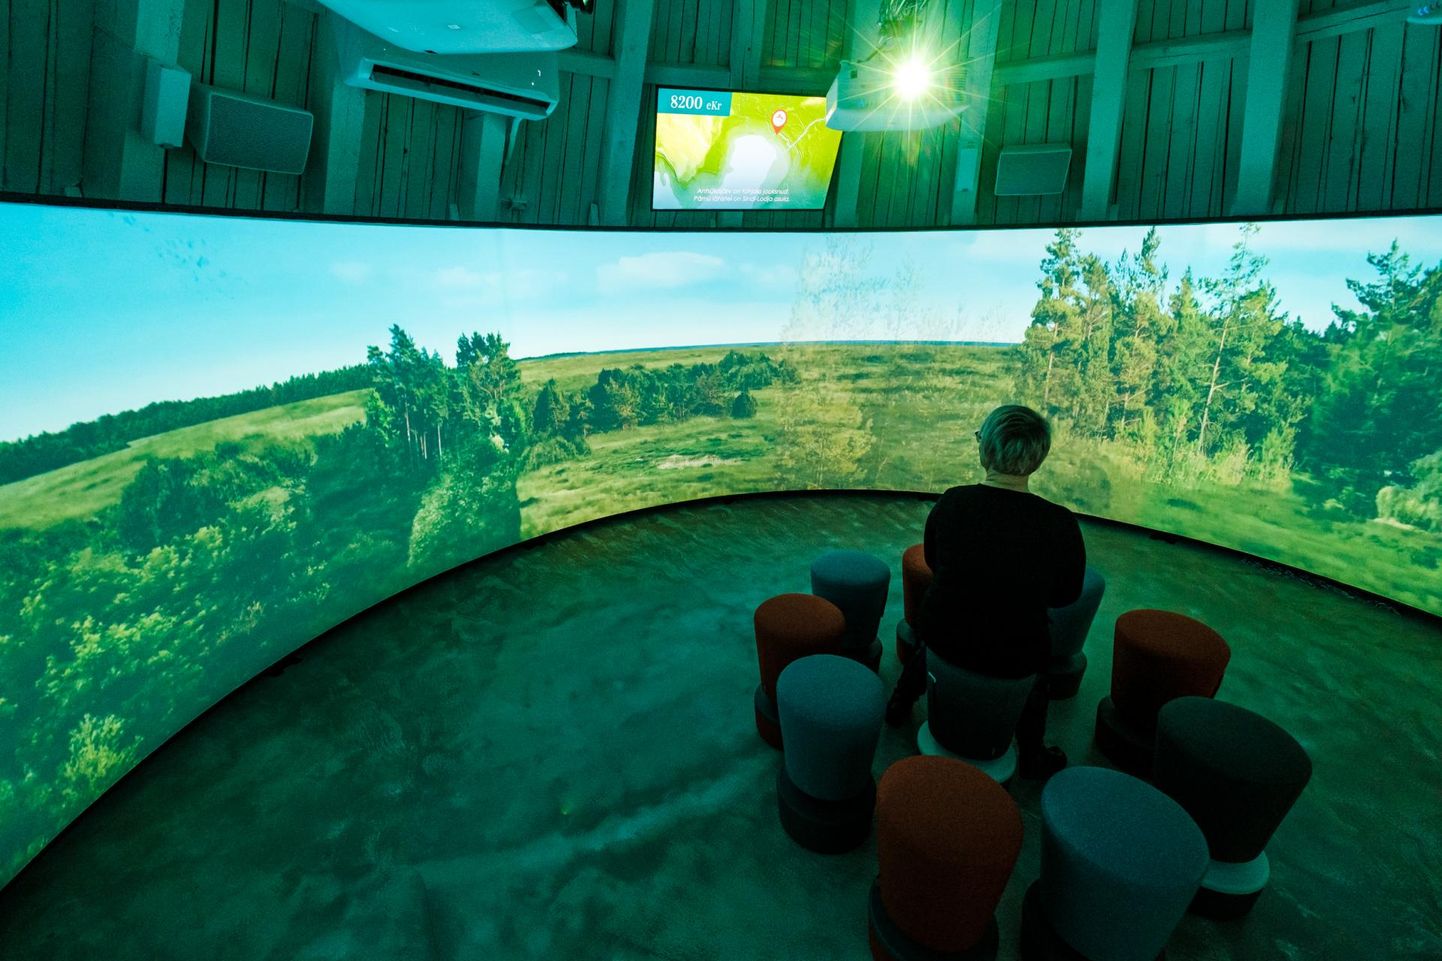 Punase torni kaitsekorrusele rajatud panoraamkinos saab vaadata Pärnu ajalugu tutvustavat animafilmi.